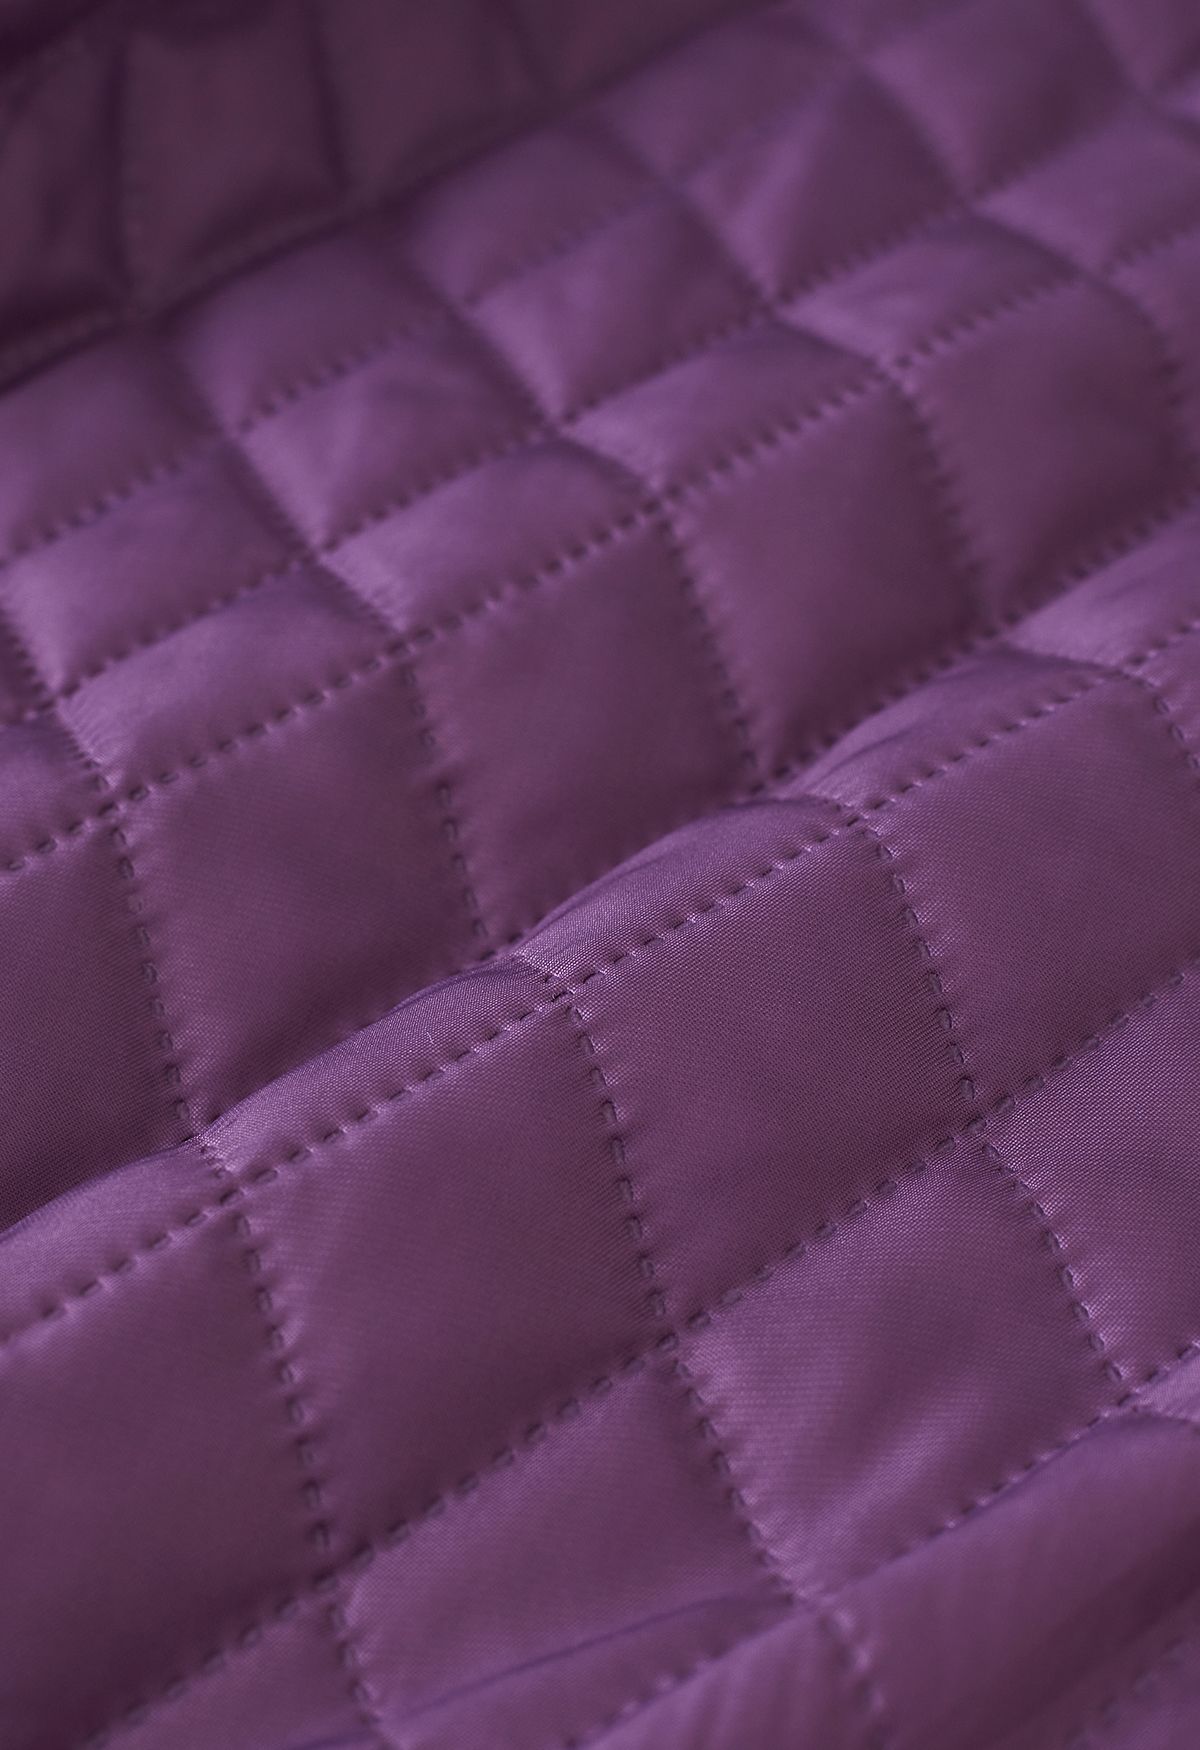 Plaid Peaked Lapel Wool-Blend Longline Coat in Berry